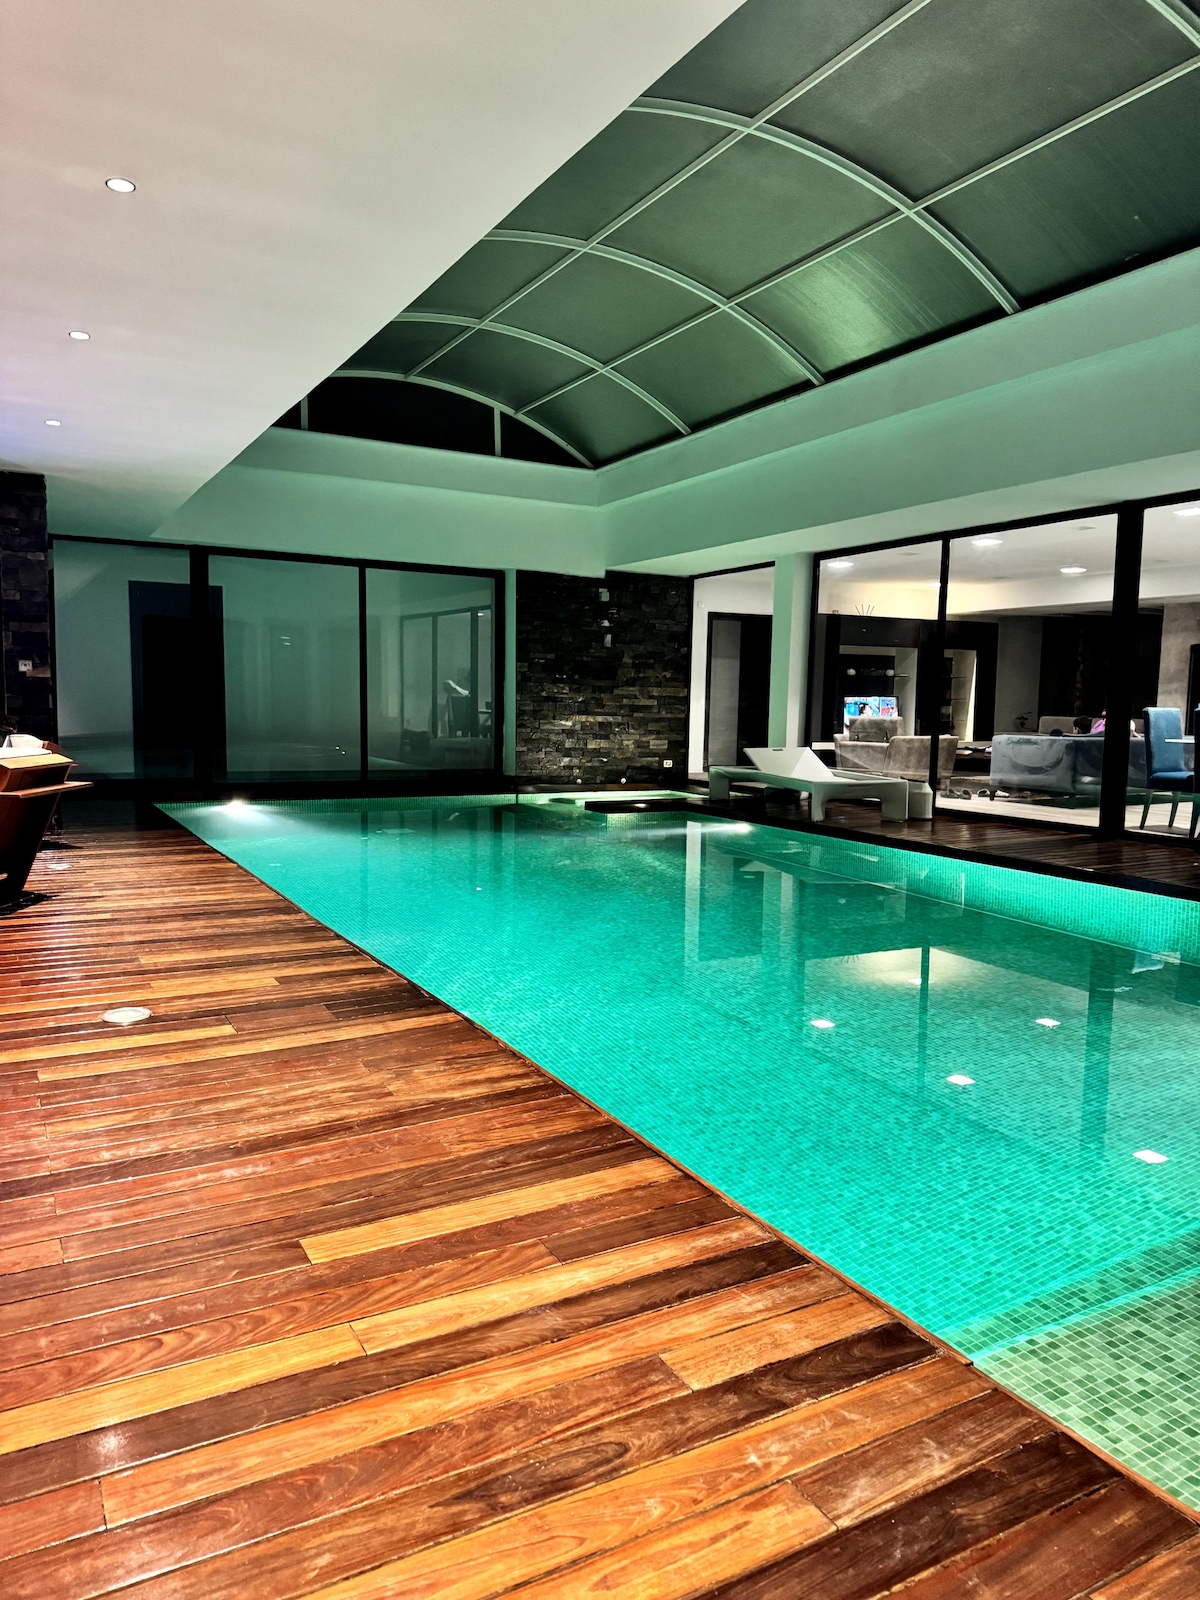 客人可在室内温水游泳池放轻松。